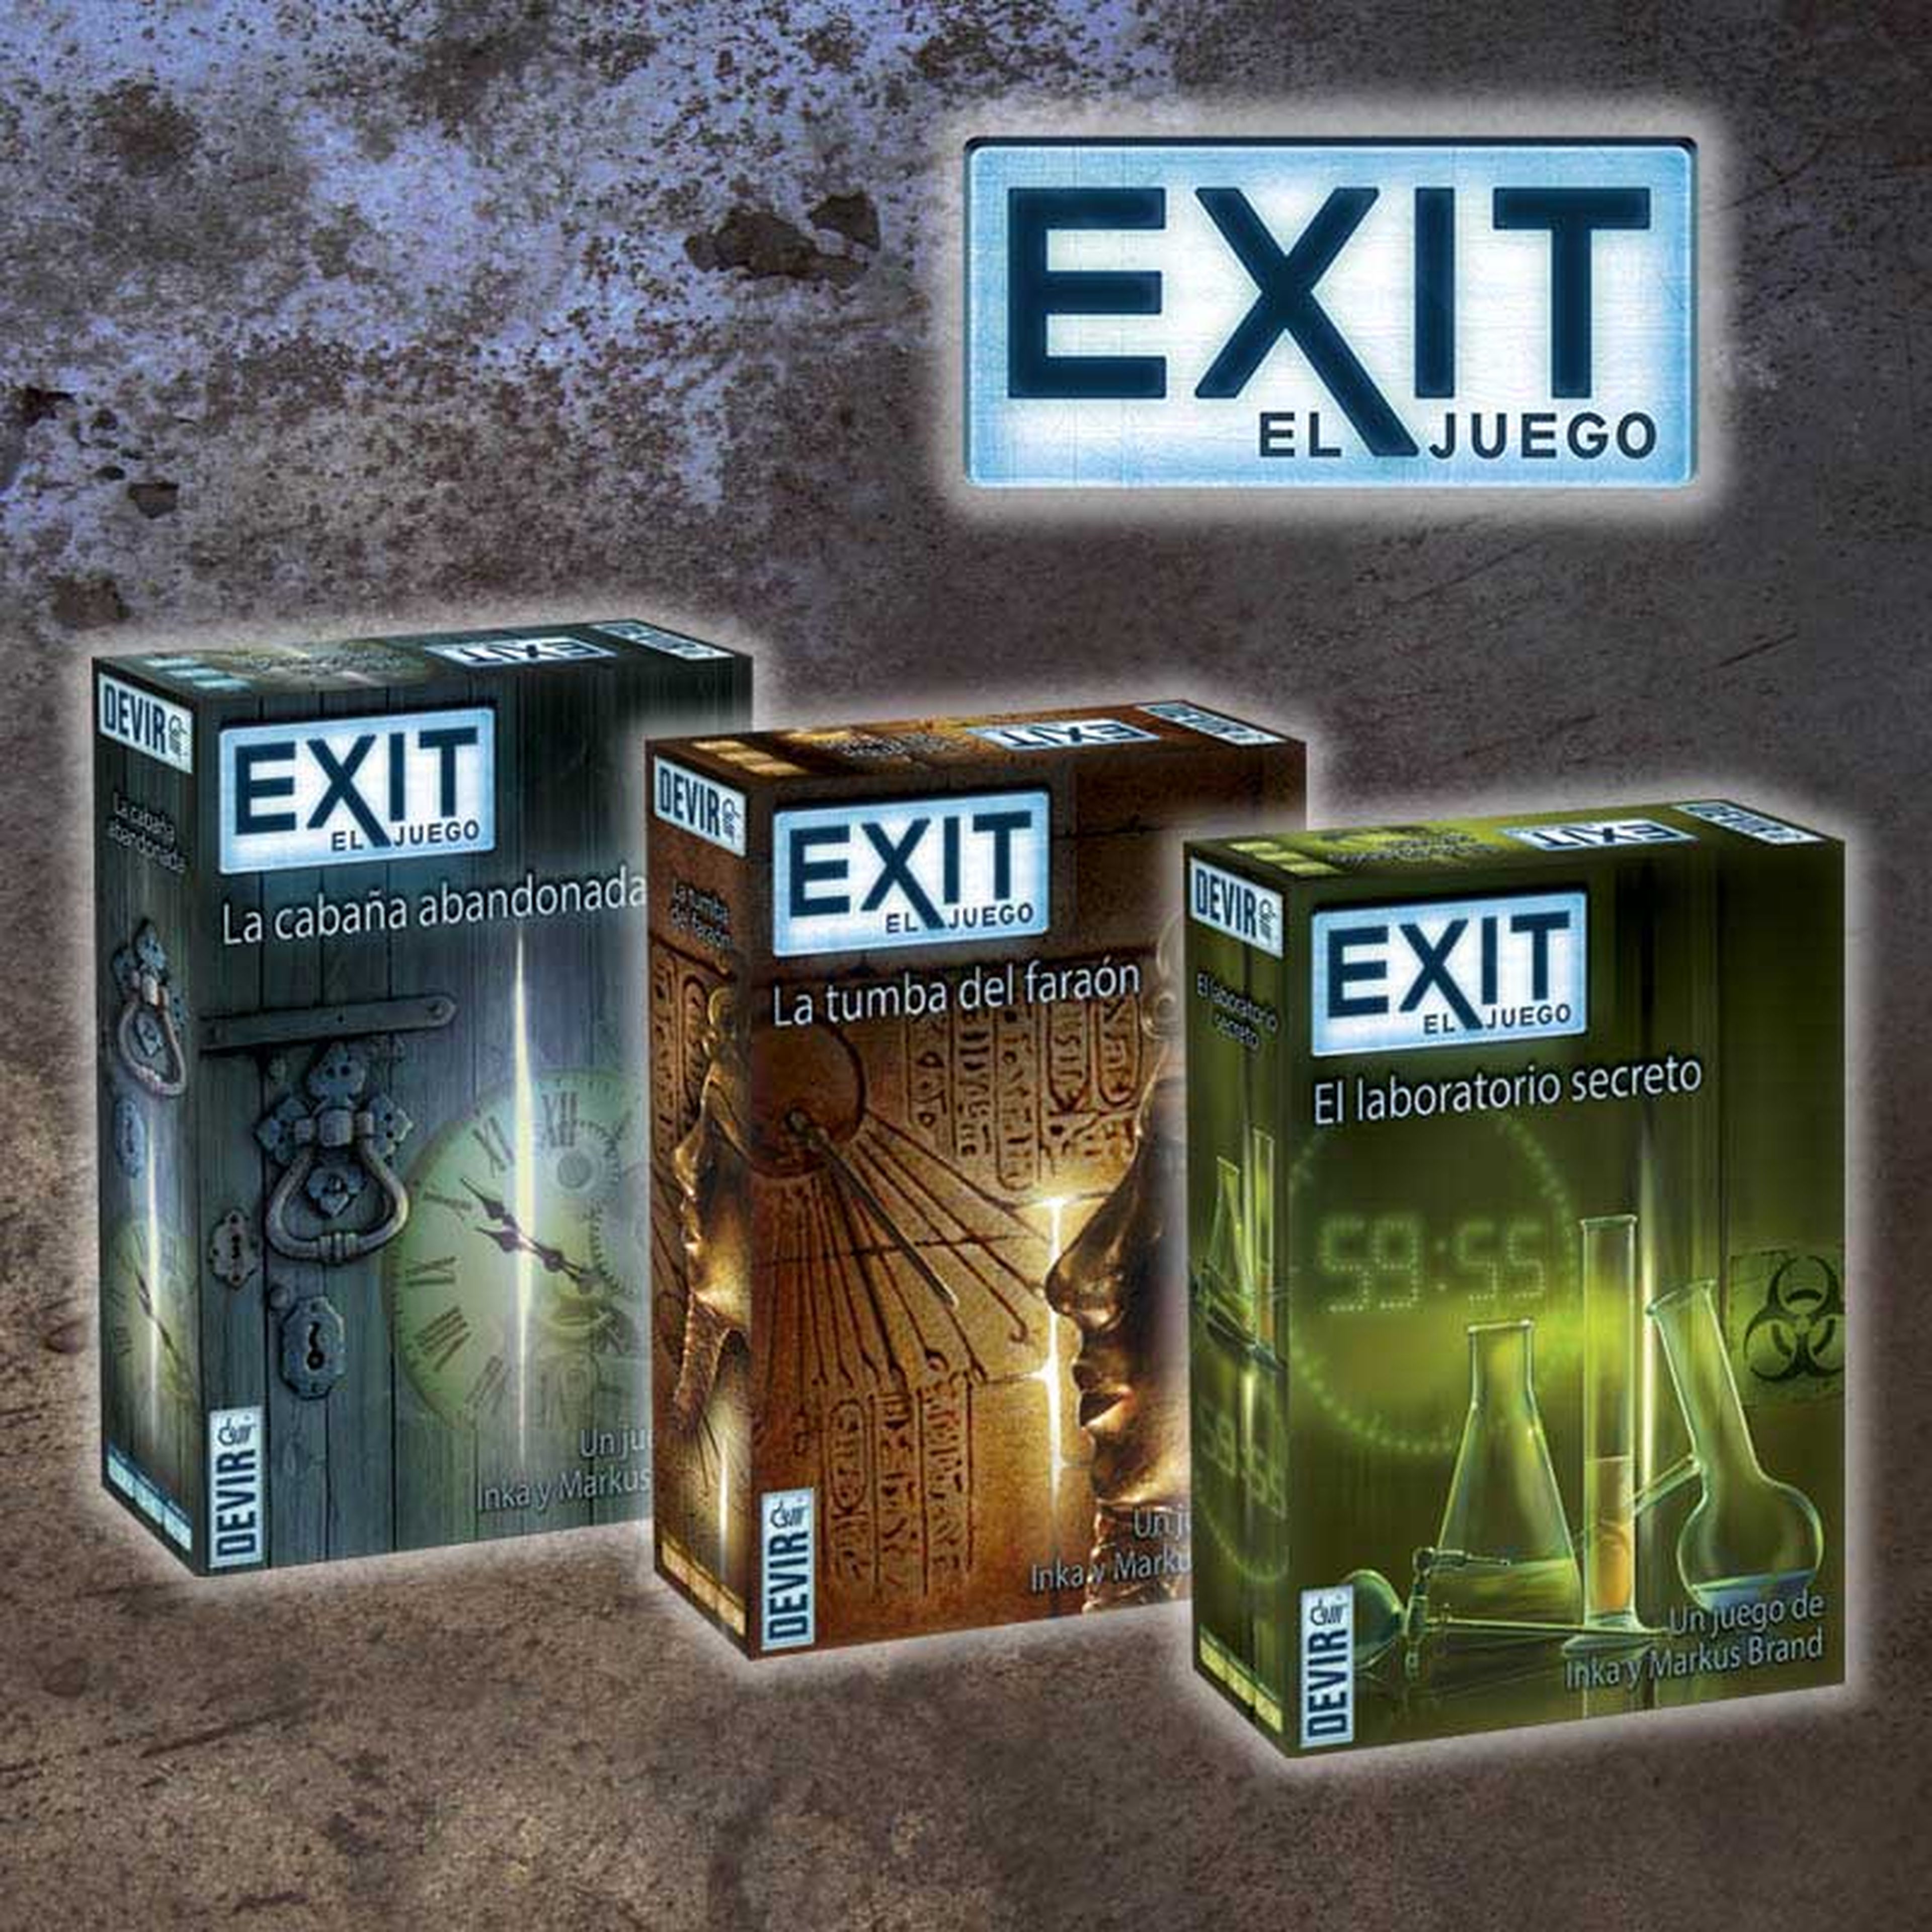 Exit - El juego de mesa de las ‘Room escape’ de Devir